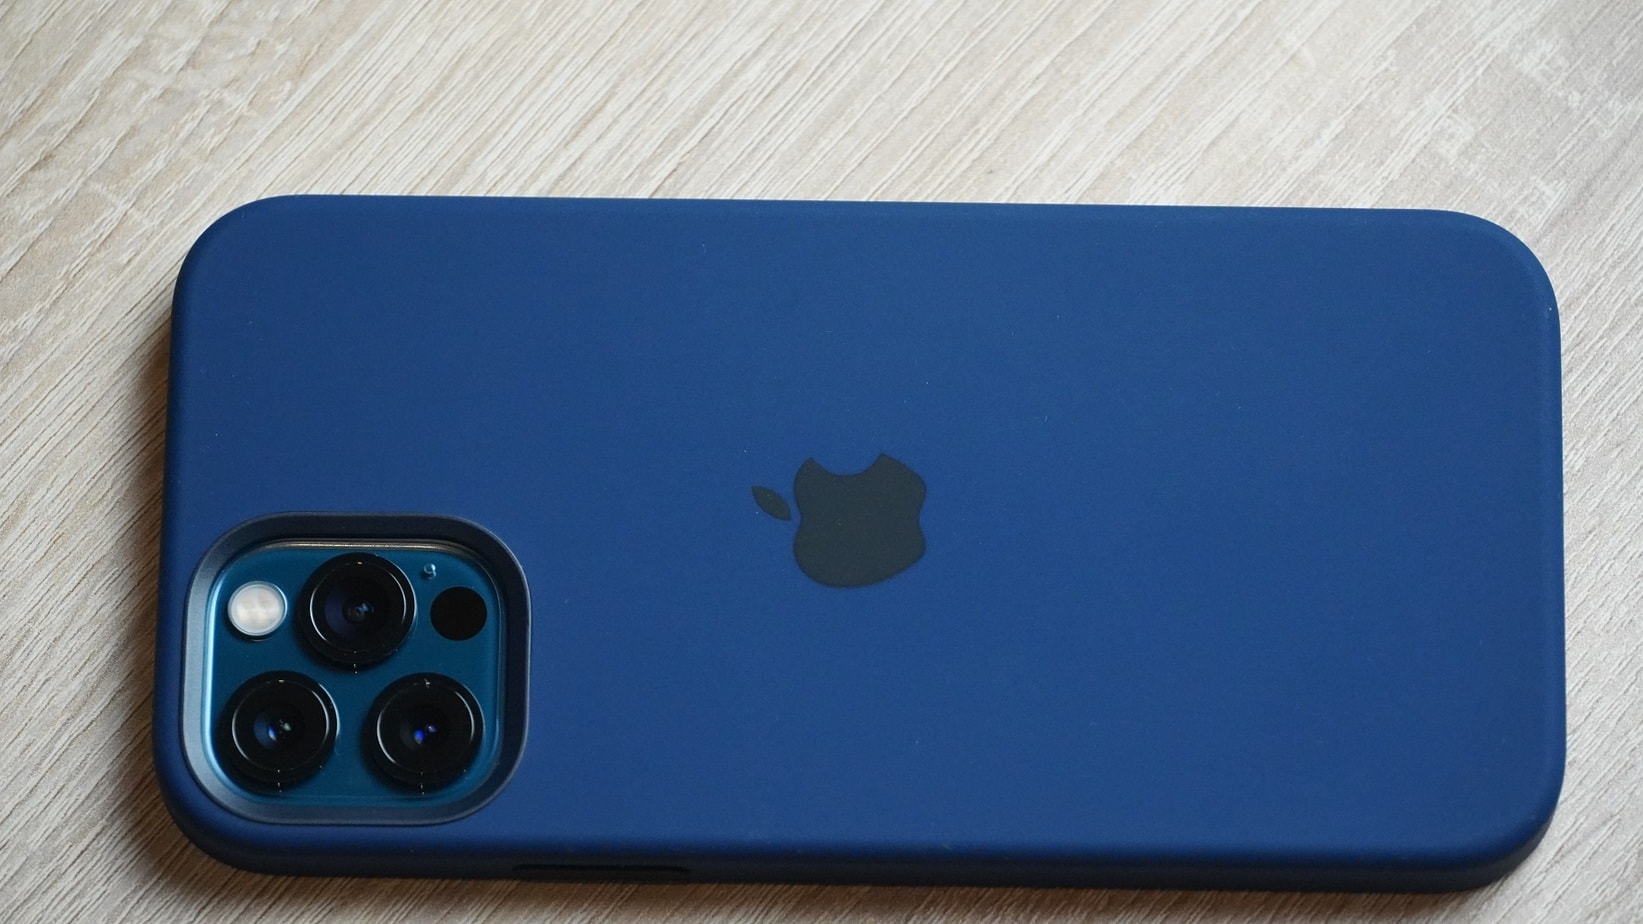 iPhone 12 Kameraschutz im Test - Taugt das überhaupt was? - Case